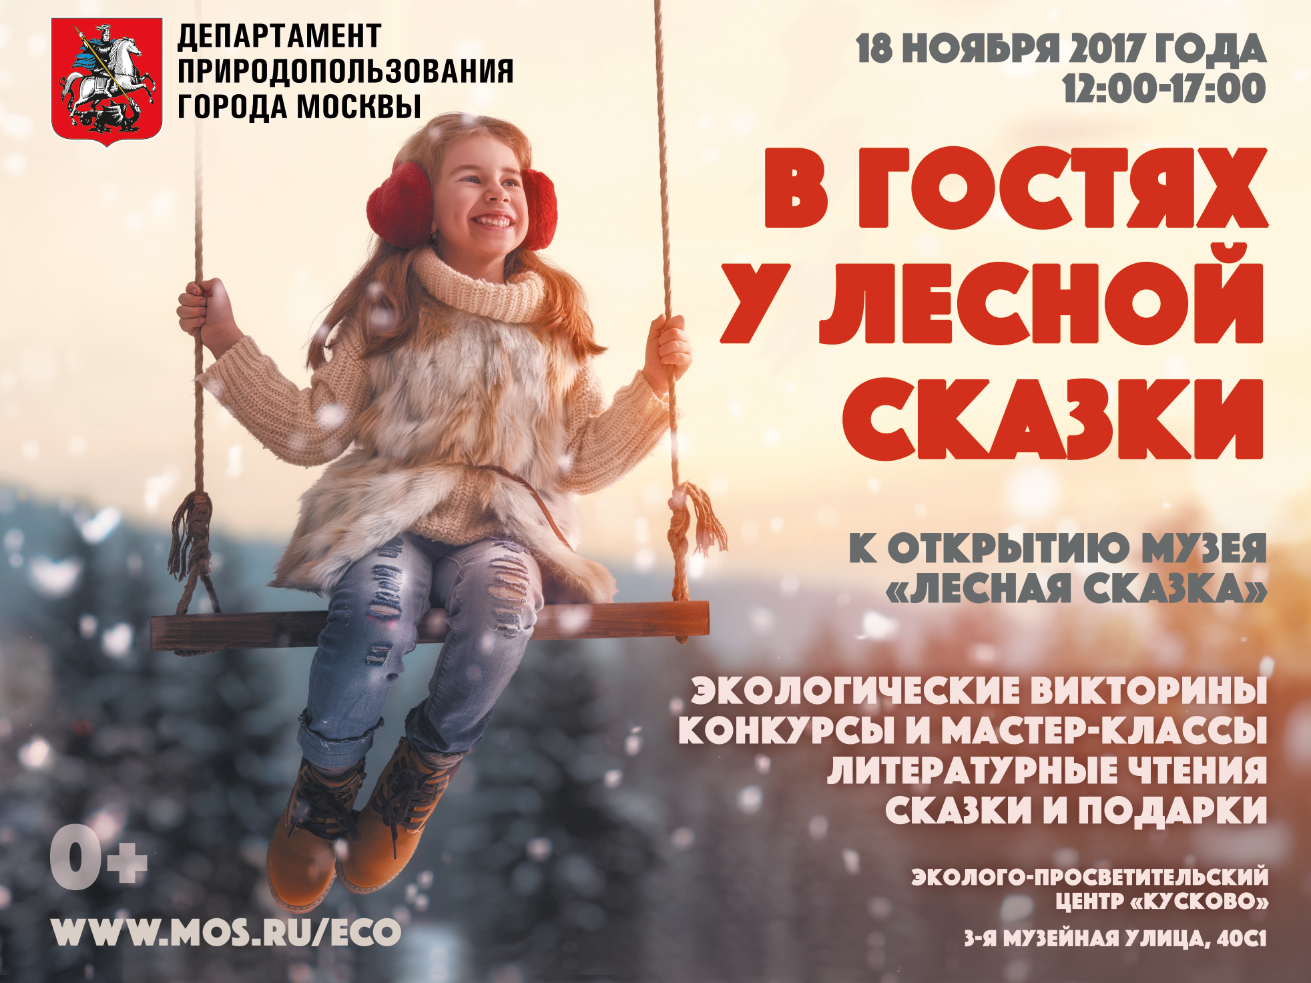 ДПиООС Москвы: мы приглашаем школьников на мероприятие «В ГОСТЯХ У ЛЕСНОЙ СКАЗКИ»